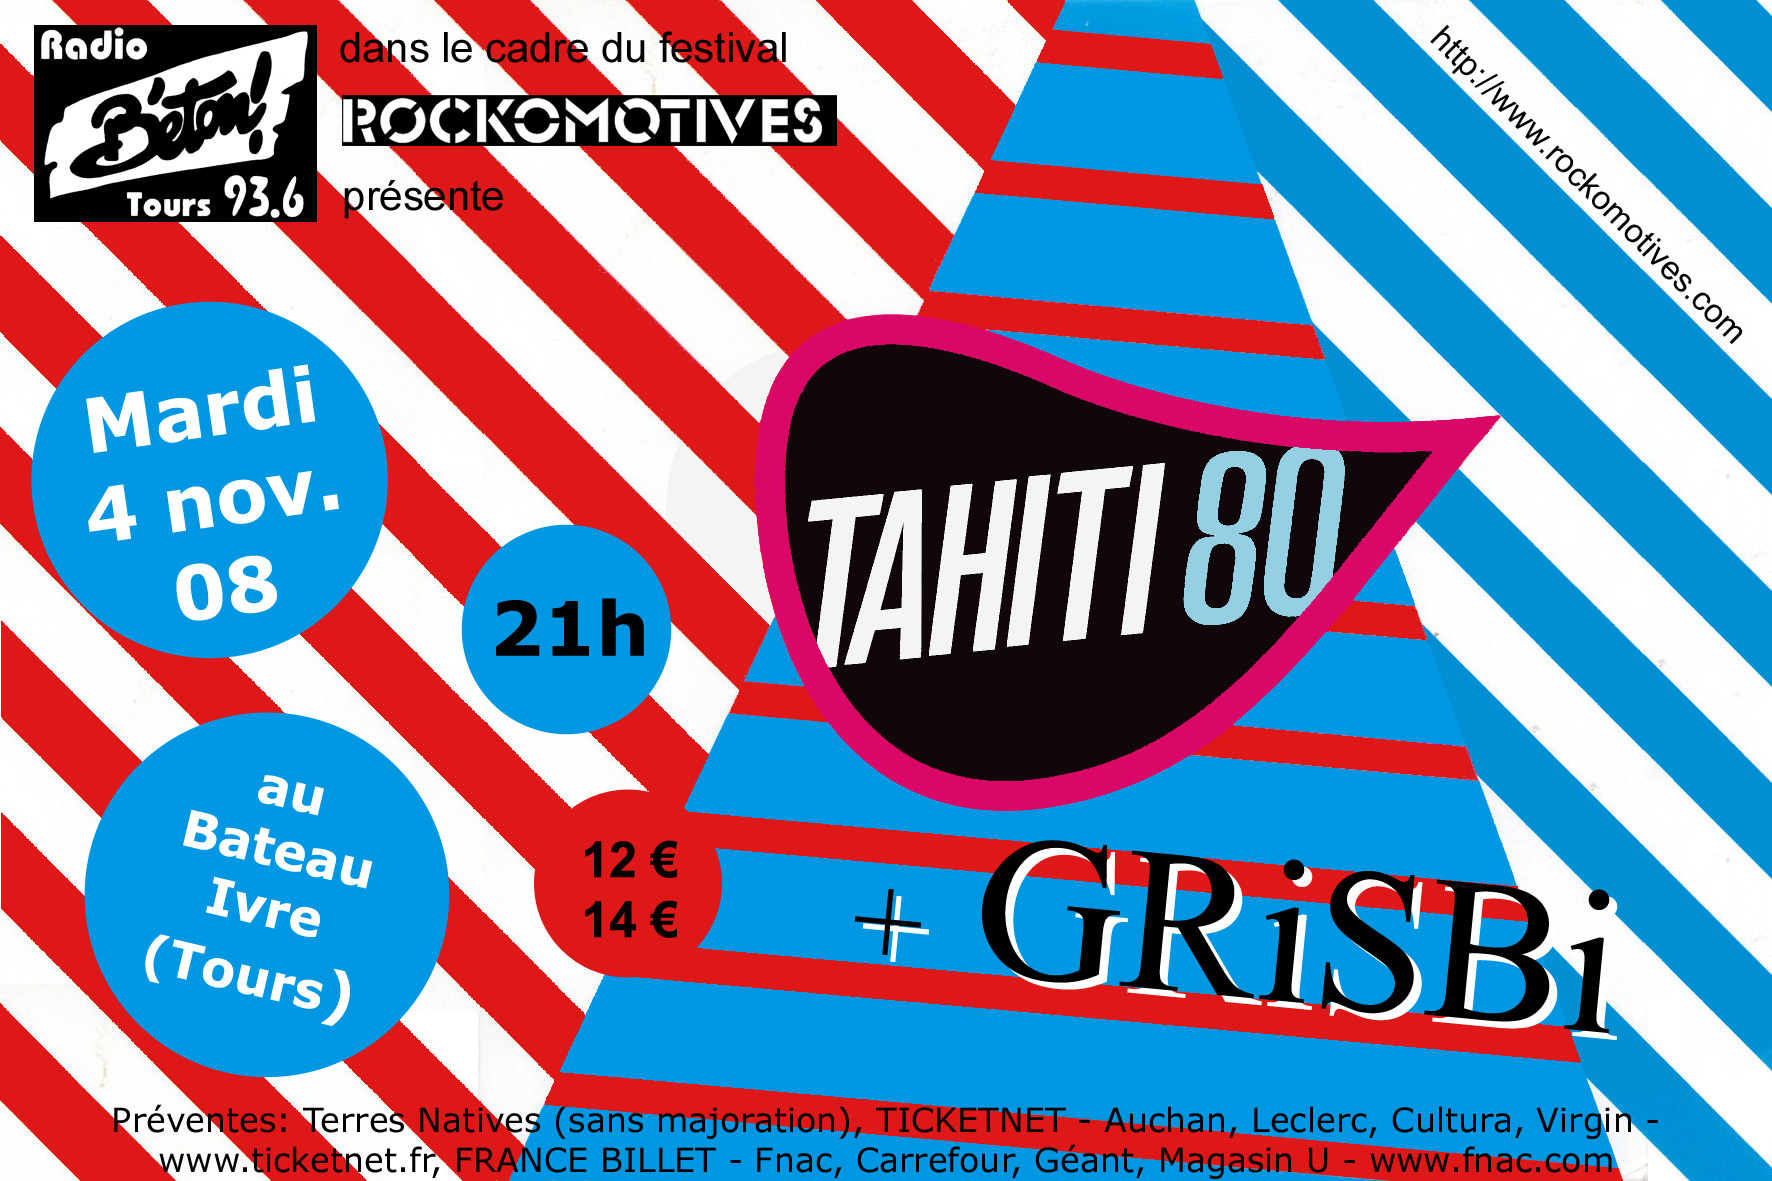 Tahiti 80 + Grisbi